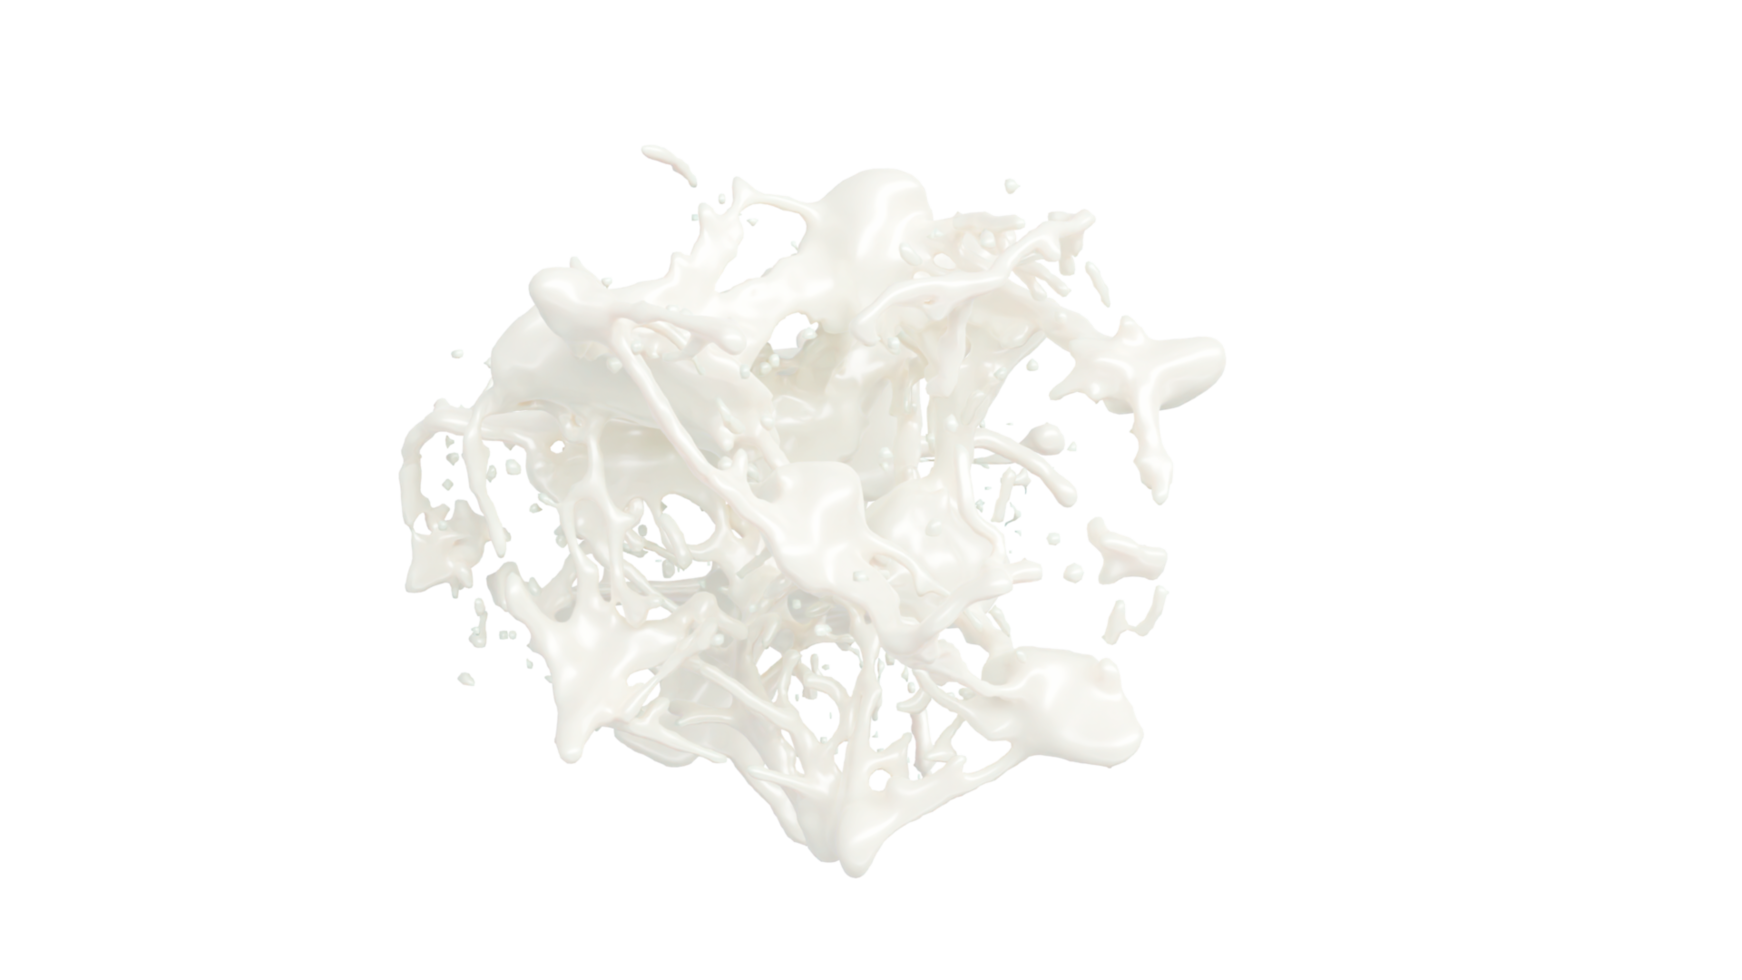 Milk Splash with droplets. 3d rendering. PNG alpha channel.